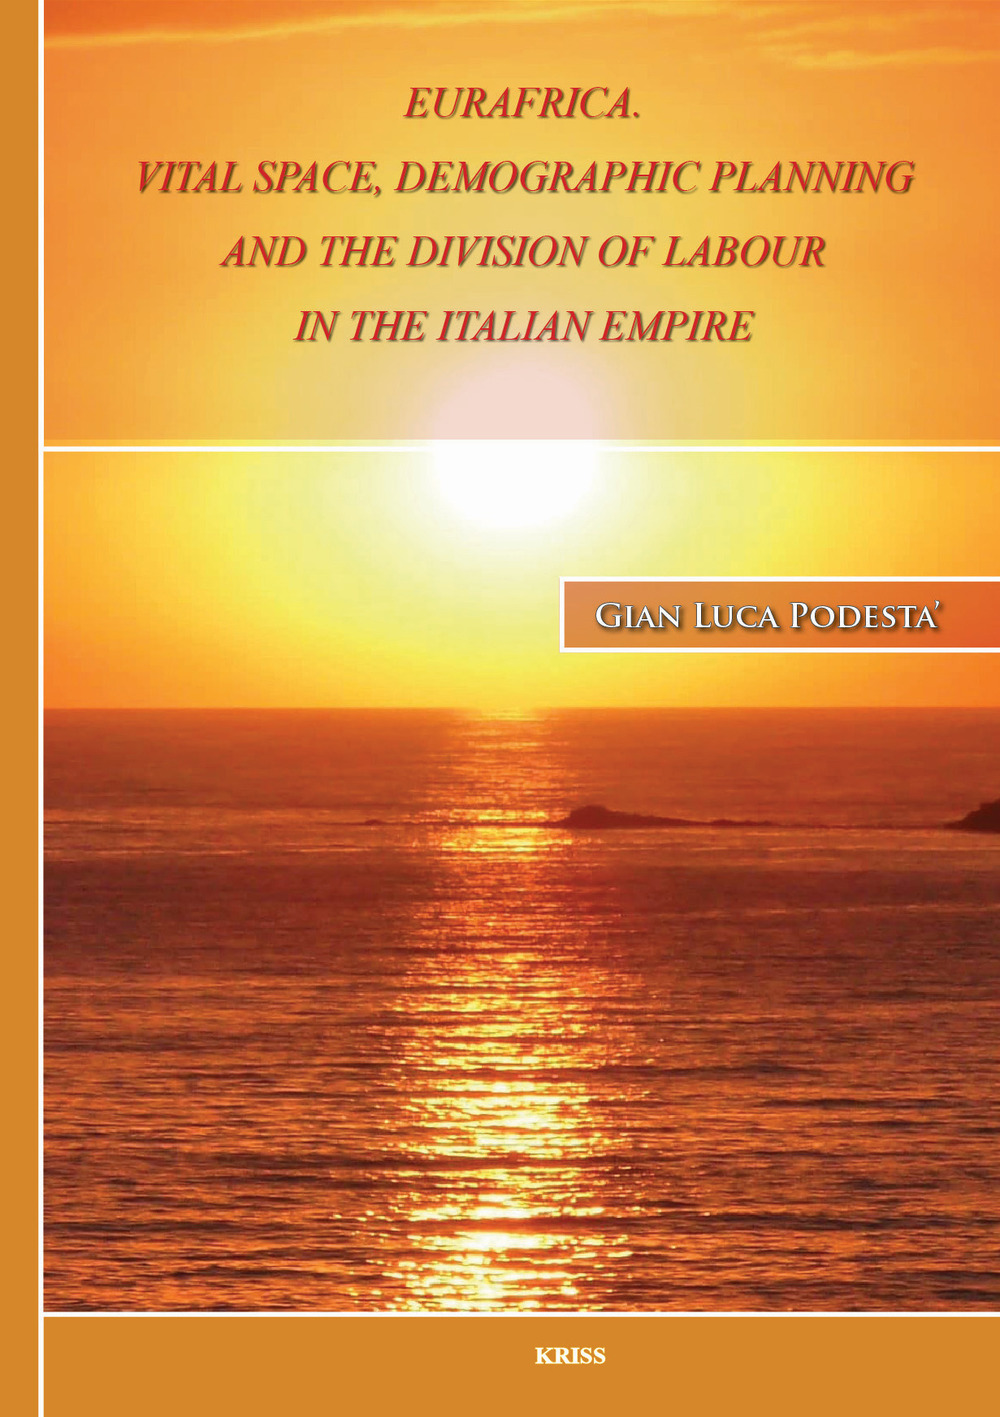 Libri Podesta Gian Luca - Eurafrica. Vital Space, Demographic Planning And The Division Of Labour In The Italian Empire NUOVO SIGILLATO SUBITO DISPONIBILE